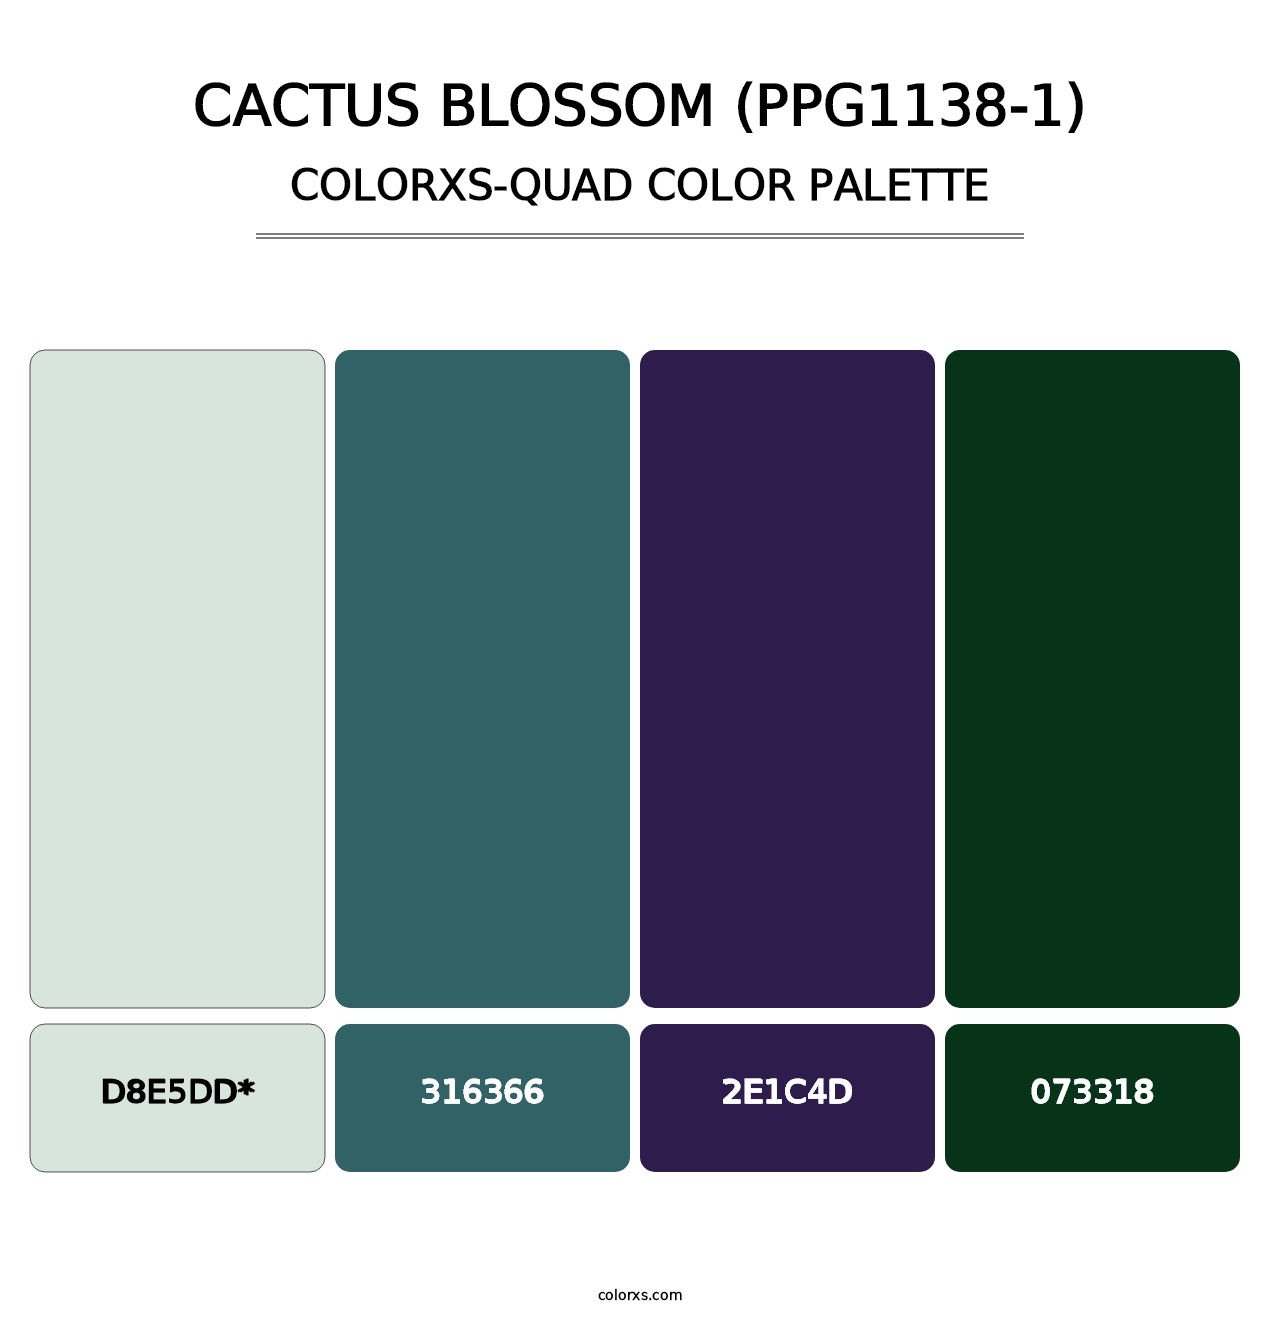 Cactus Blossom (PPG1138-1) - Colorxs Quad Palette